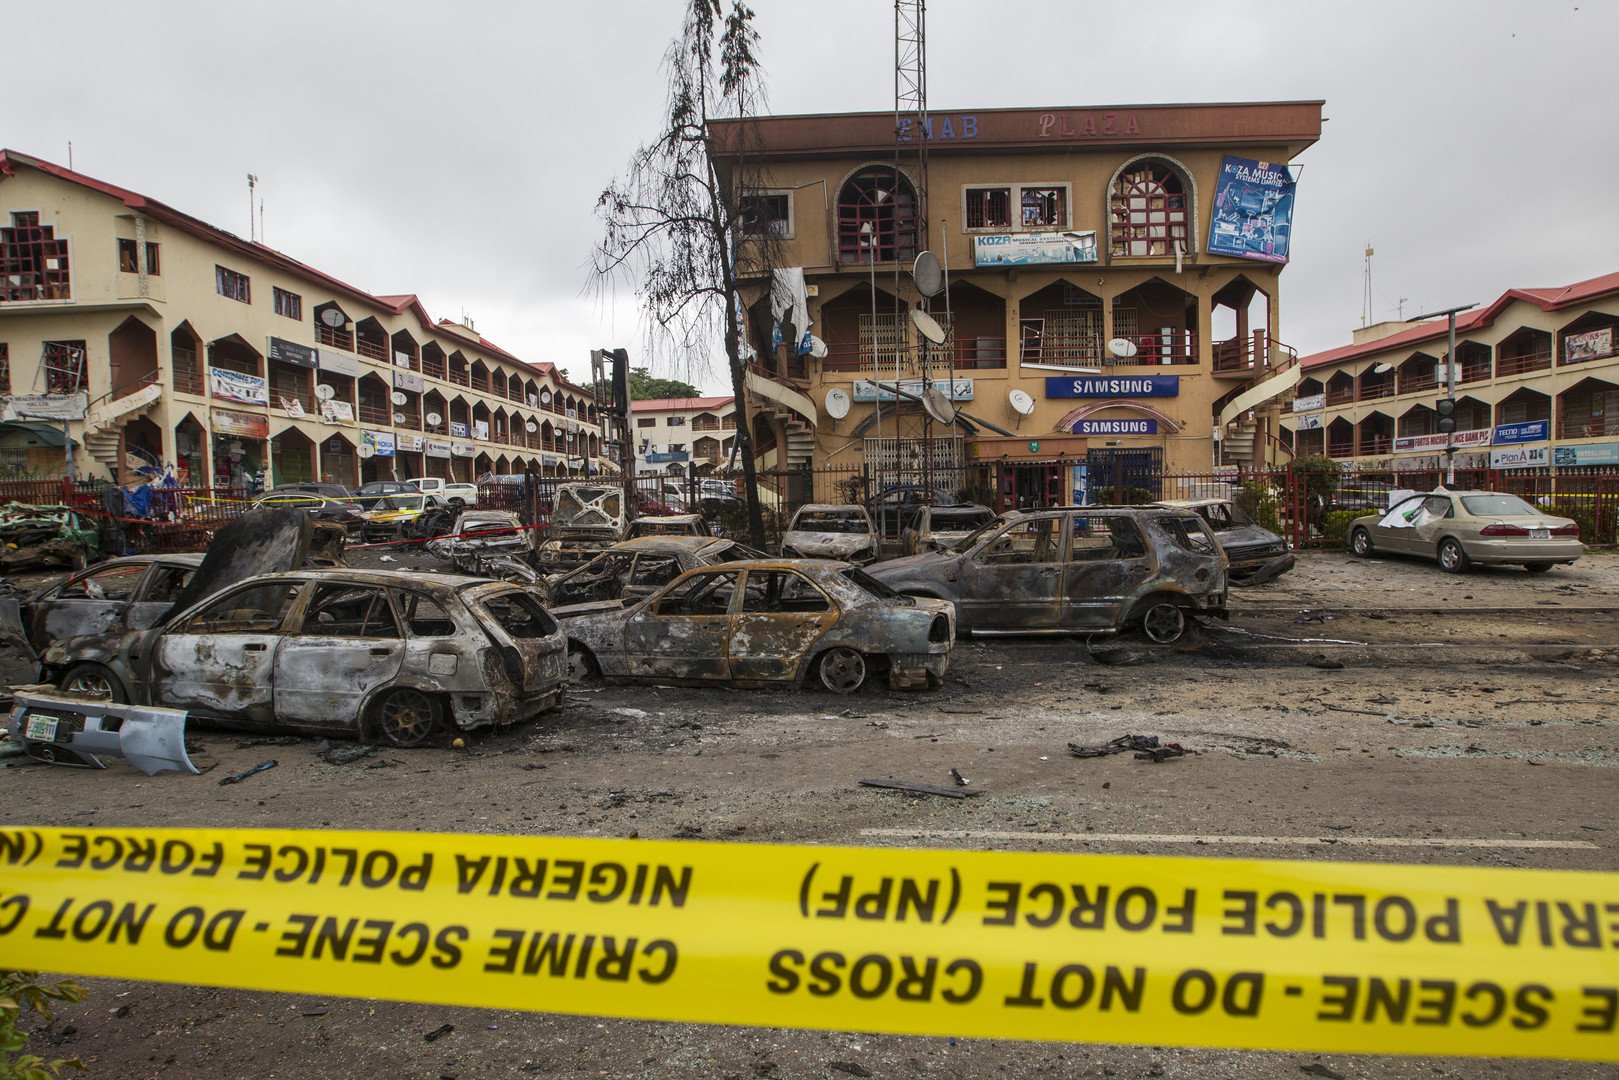  مشهد لمركز إماب التجاري في أعقاب تفجير إرهابي بالمنطقة، في مدينة أبوجا بنيجيريا، 26 يونيو/حزيران 